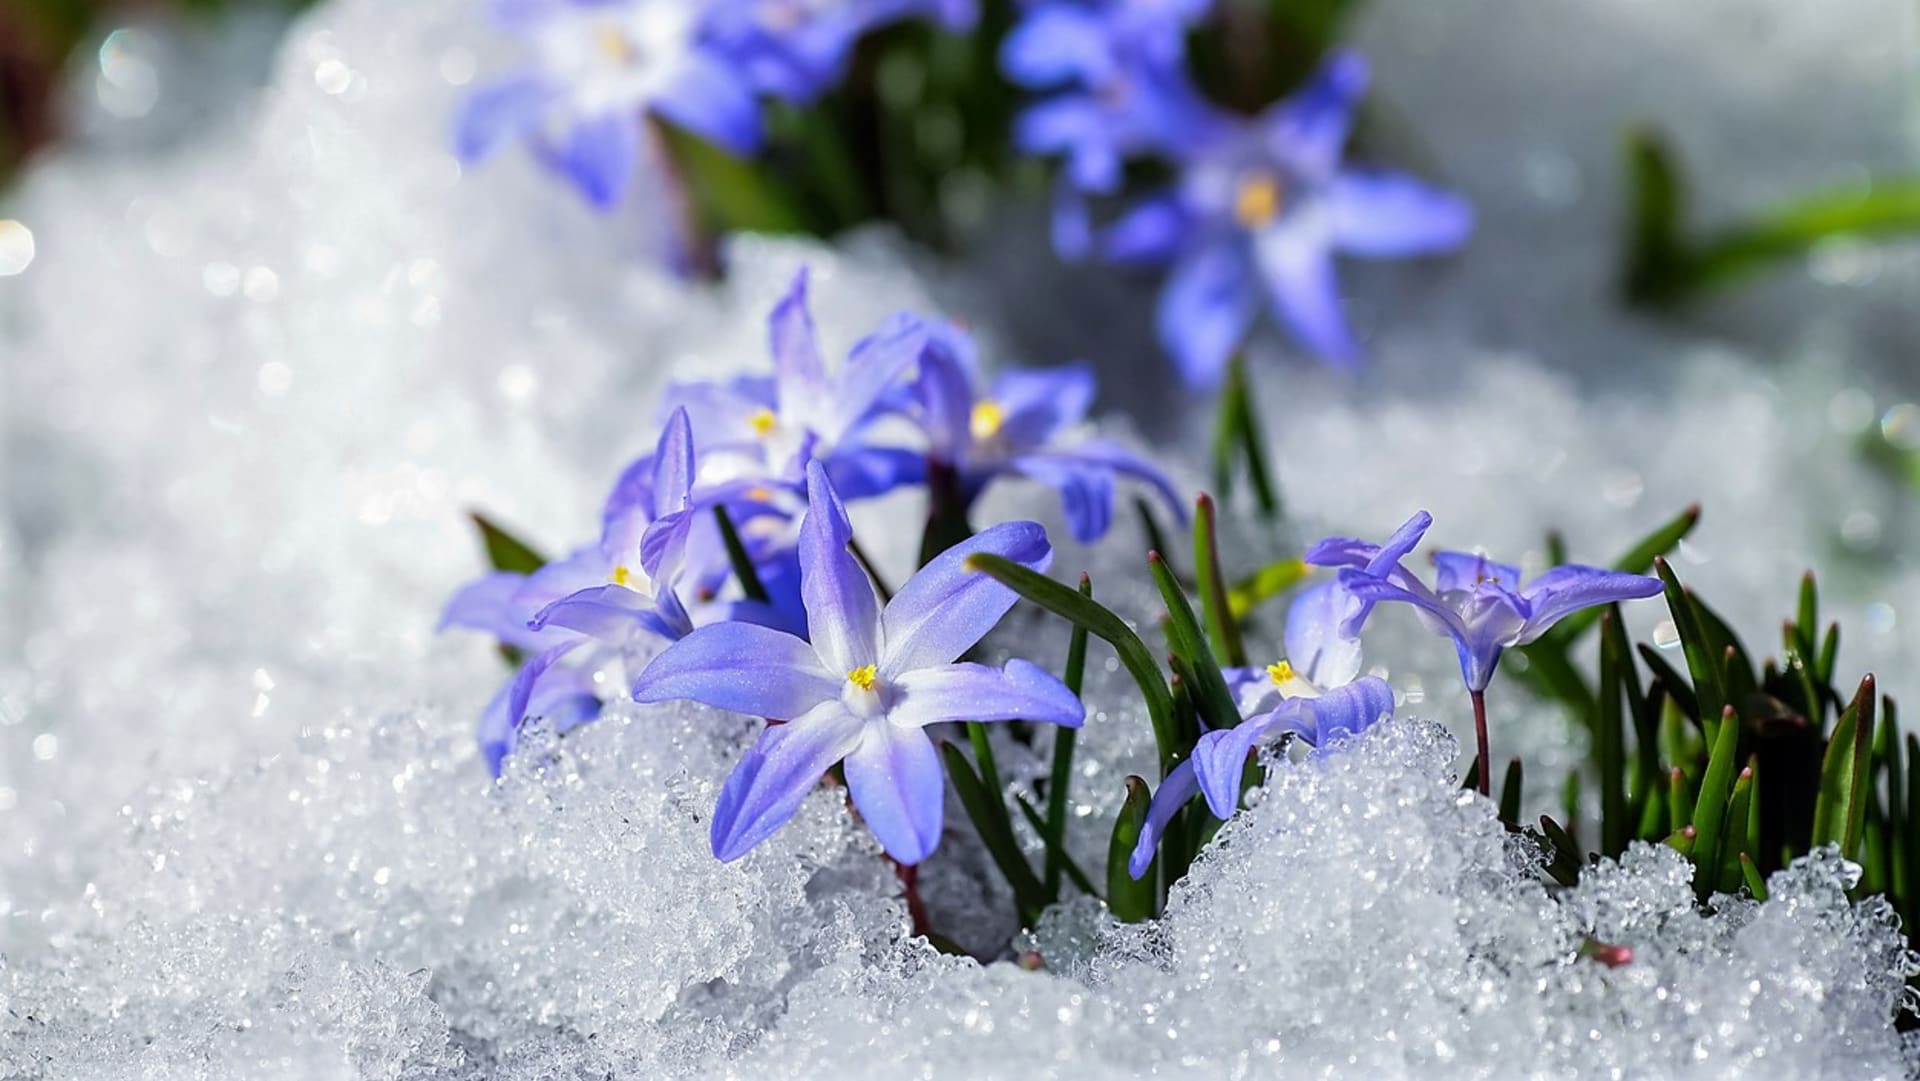 Ladoničky kvetou od února až do dubna, často se objevují na sněhu nebo při jeho tání, a tak se v květu potkávají se sněženkami a bledulemi. 